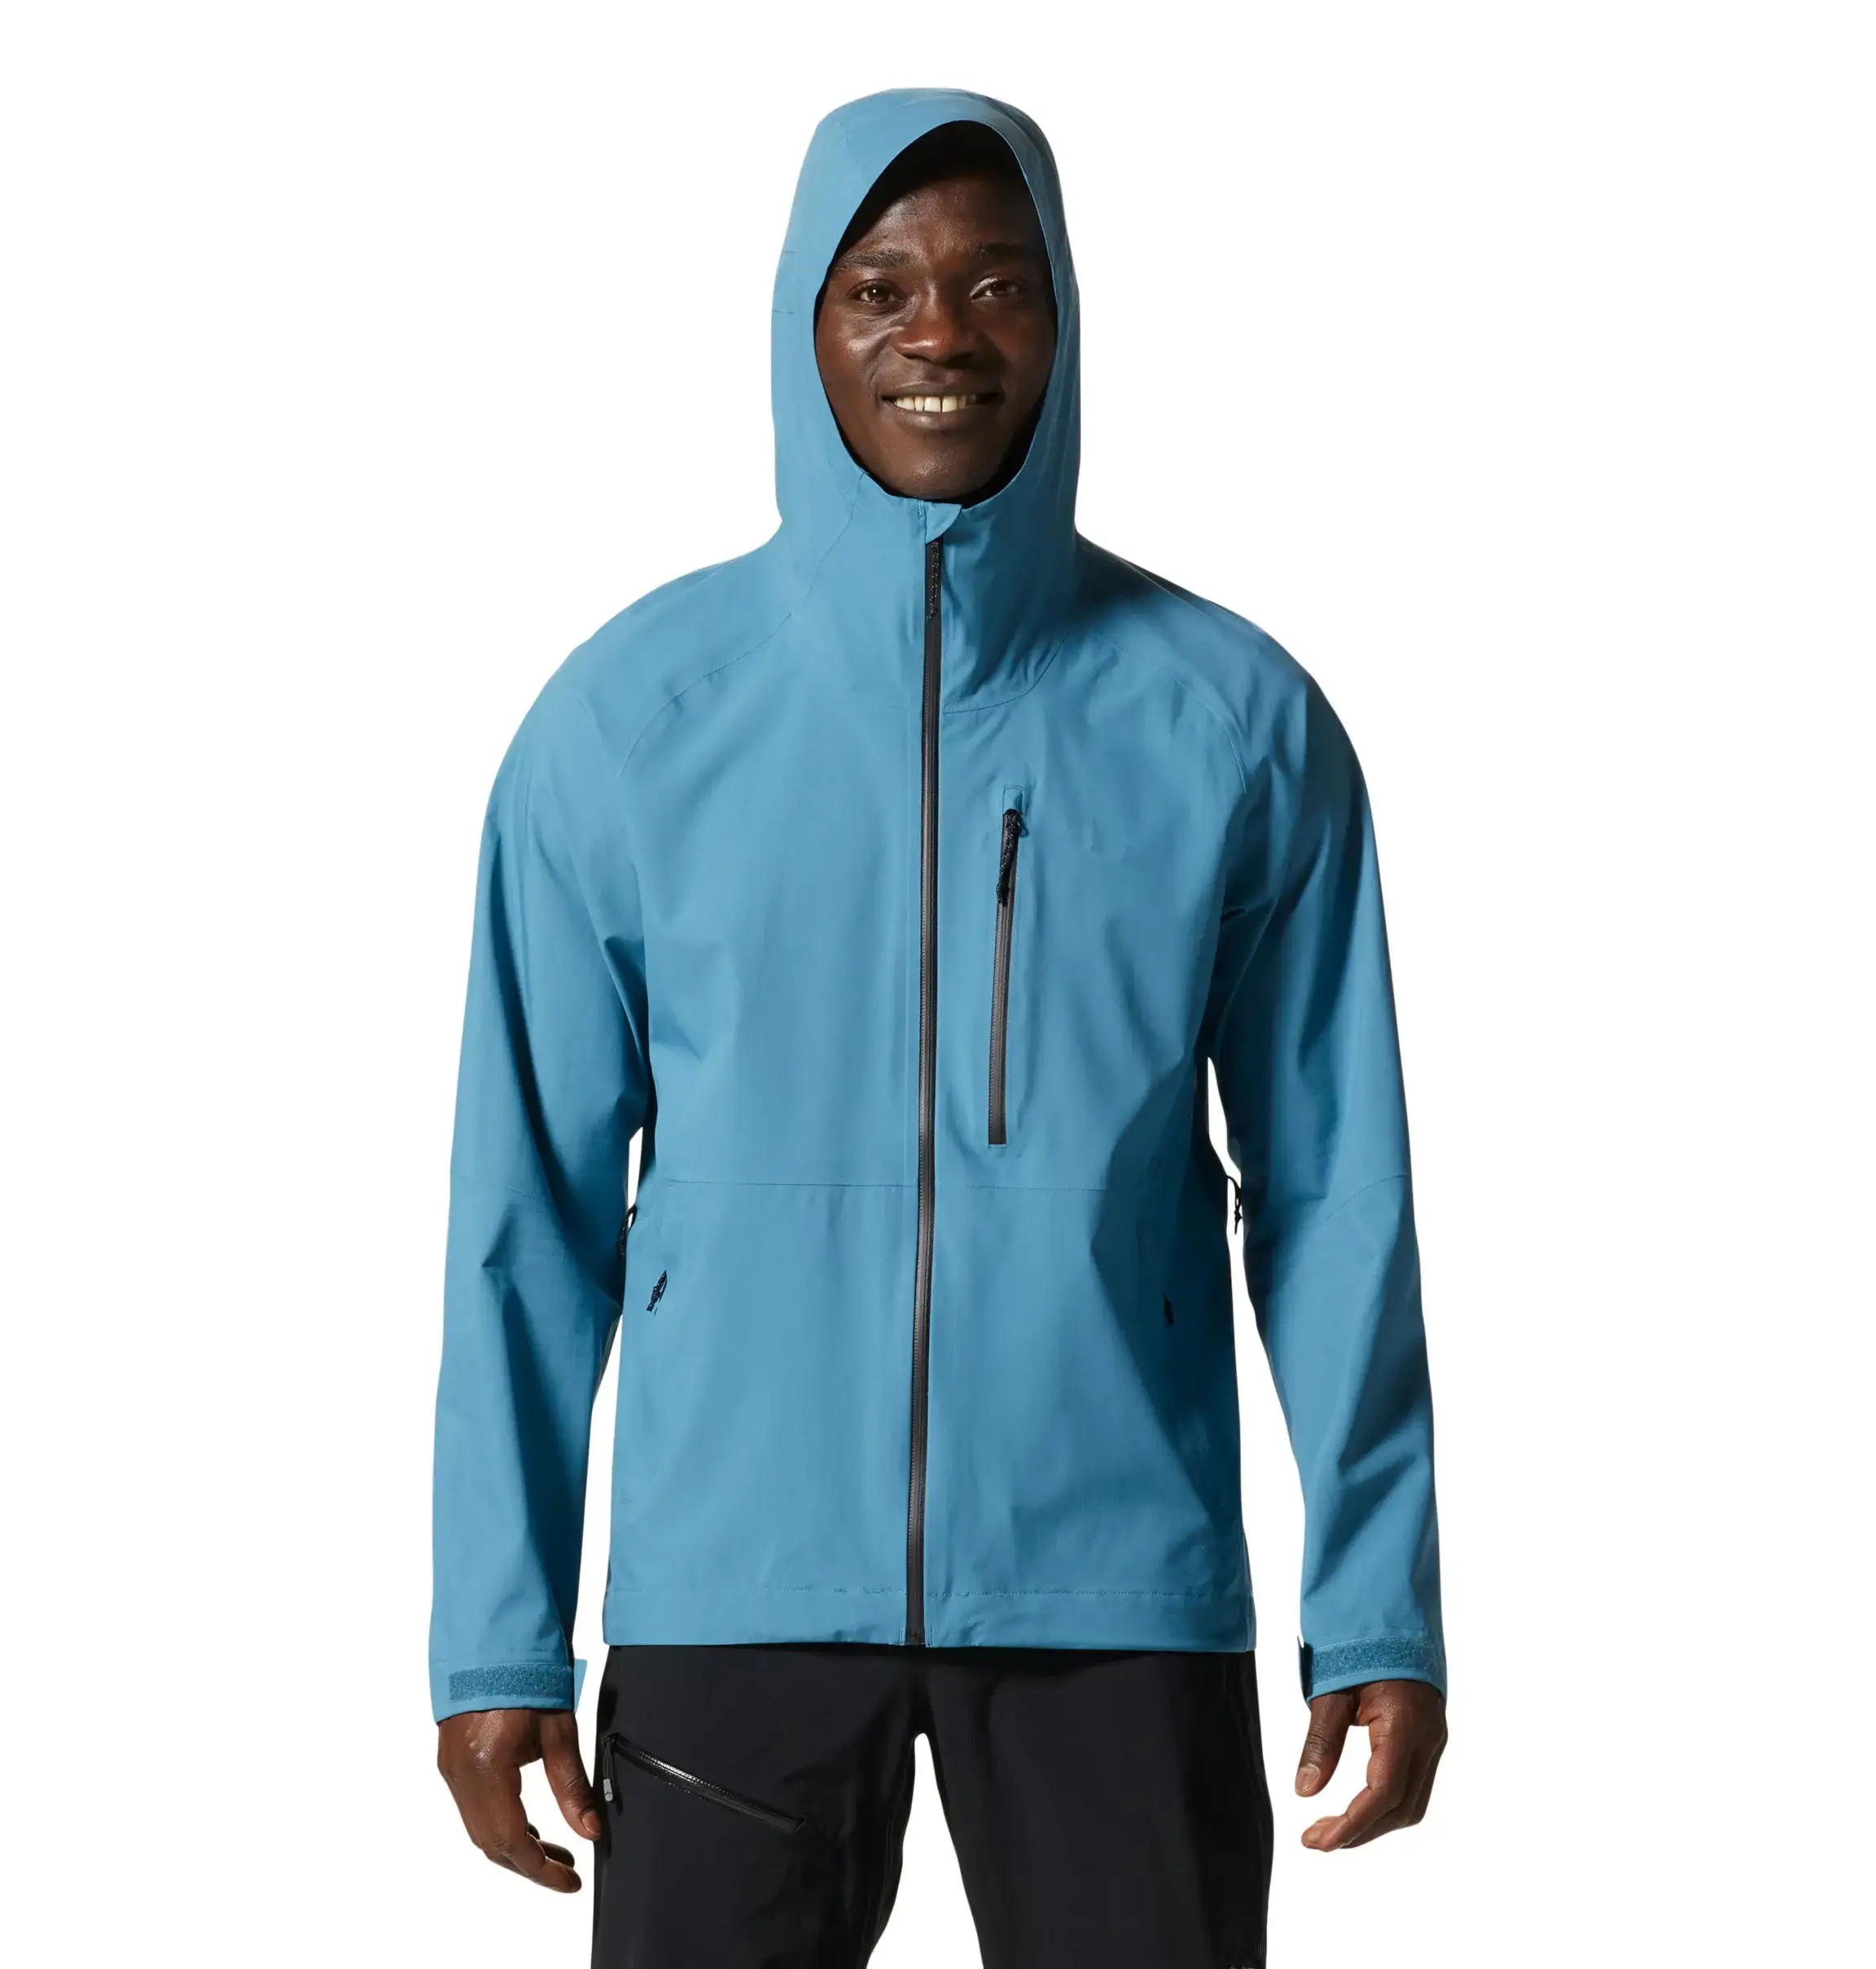 Terzo spor Superlight erkek özel su geçirmez ceket nefes ve sıkı yırtılmaz kumaş katı desen yağmurluk